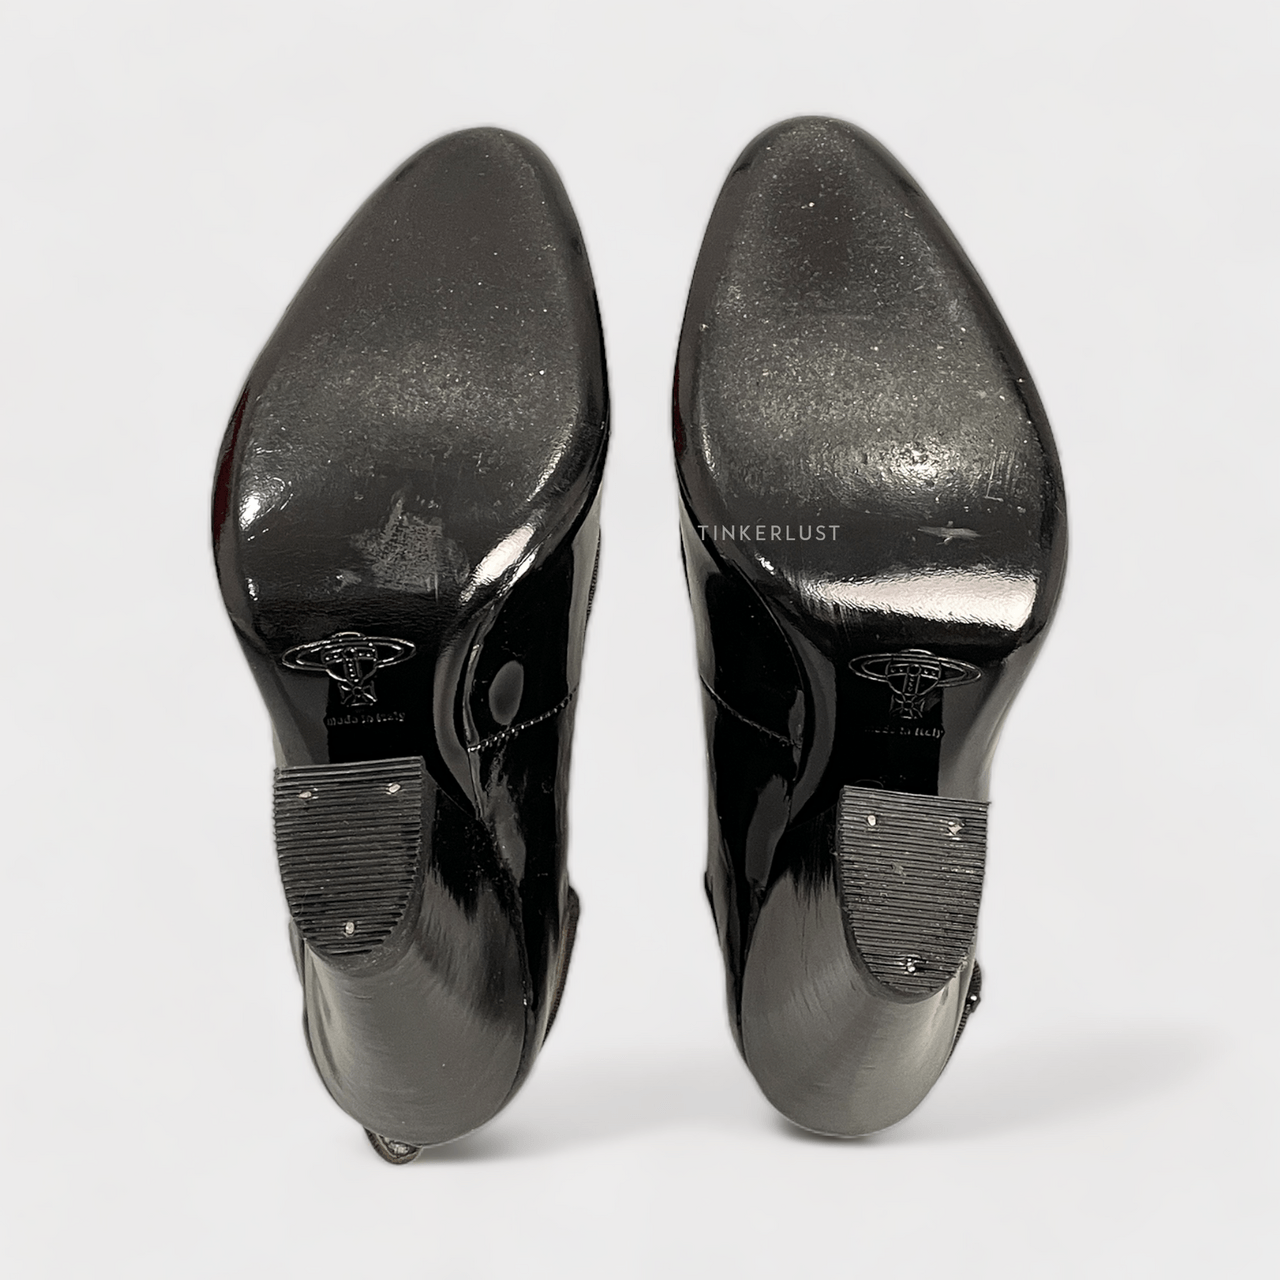 Vivienne Westwood Black Slingback Heels